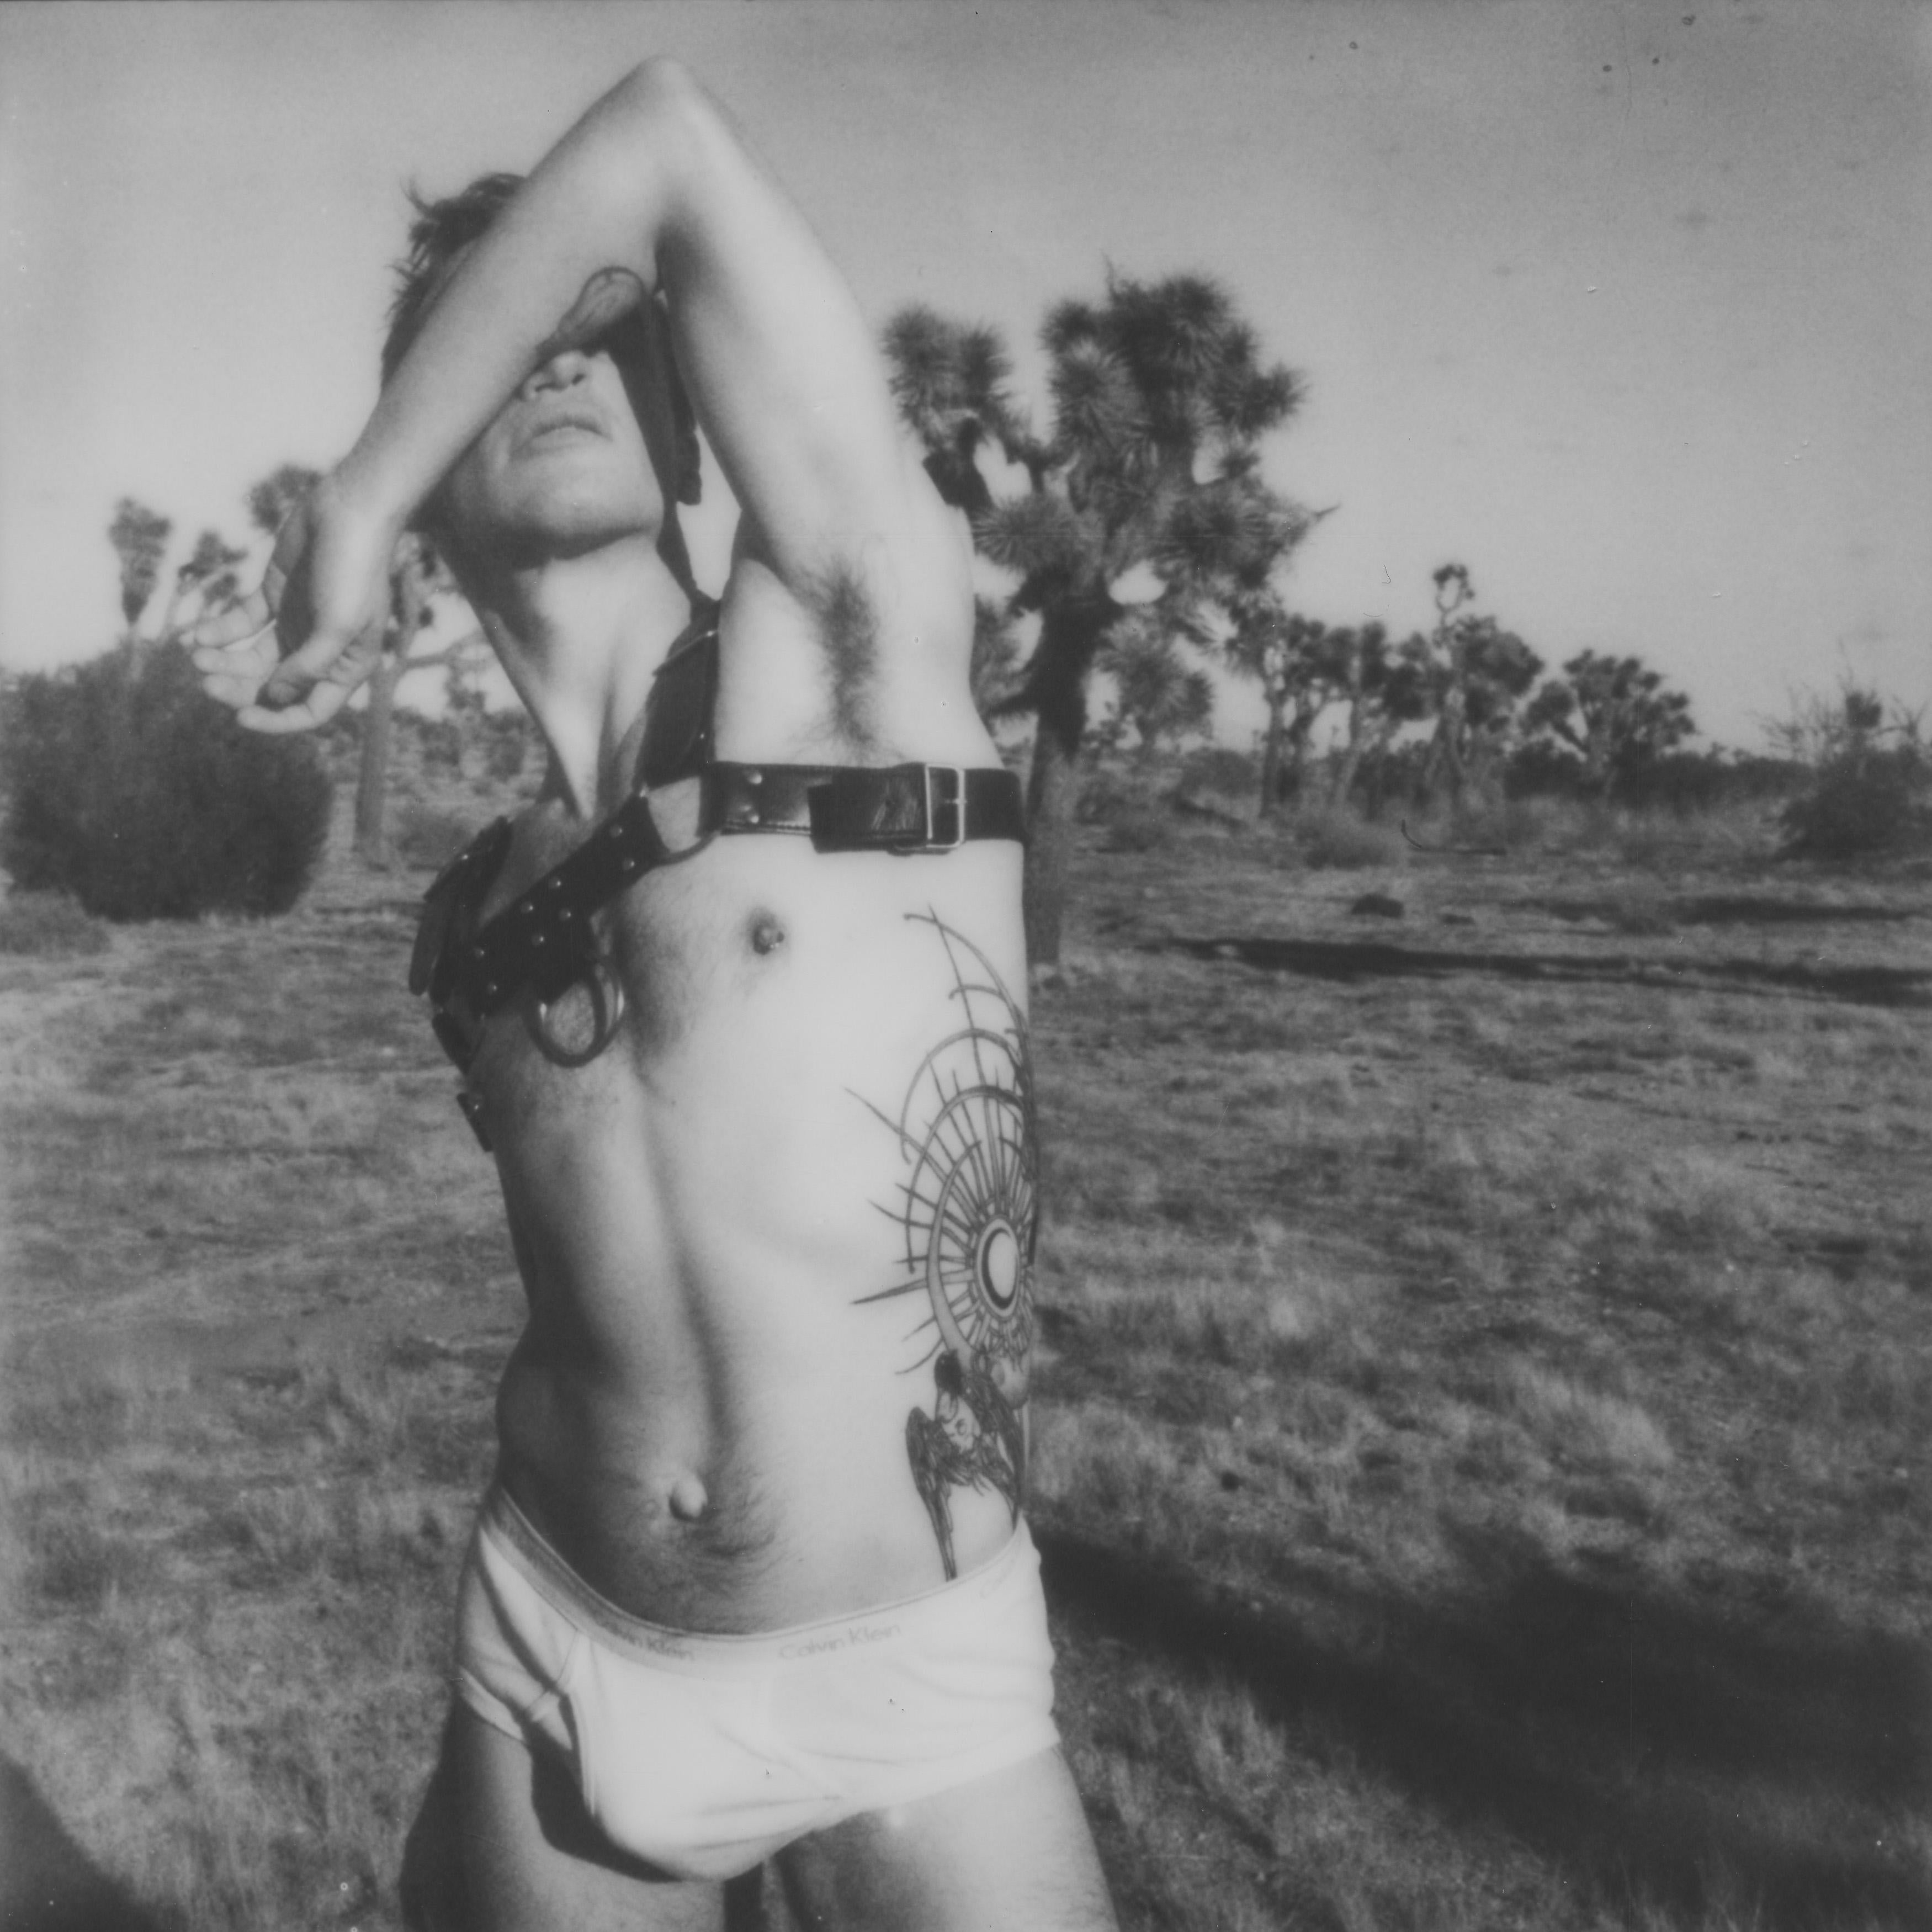 Kirsten Thys van den Audenaerde Nude Photograph - The Future's so bright - Contemporary, Polaroid, Nude, 21st Century, Joshua Tree